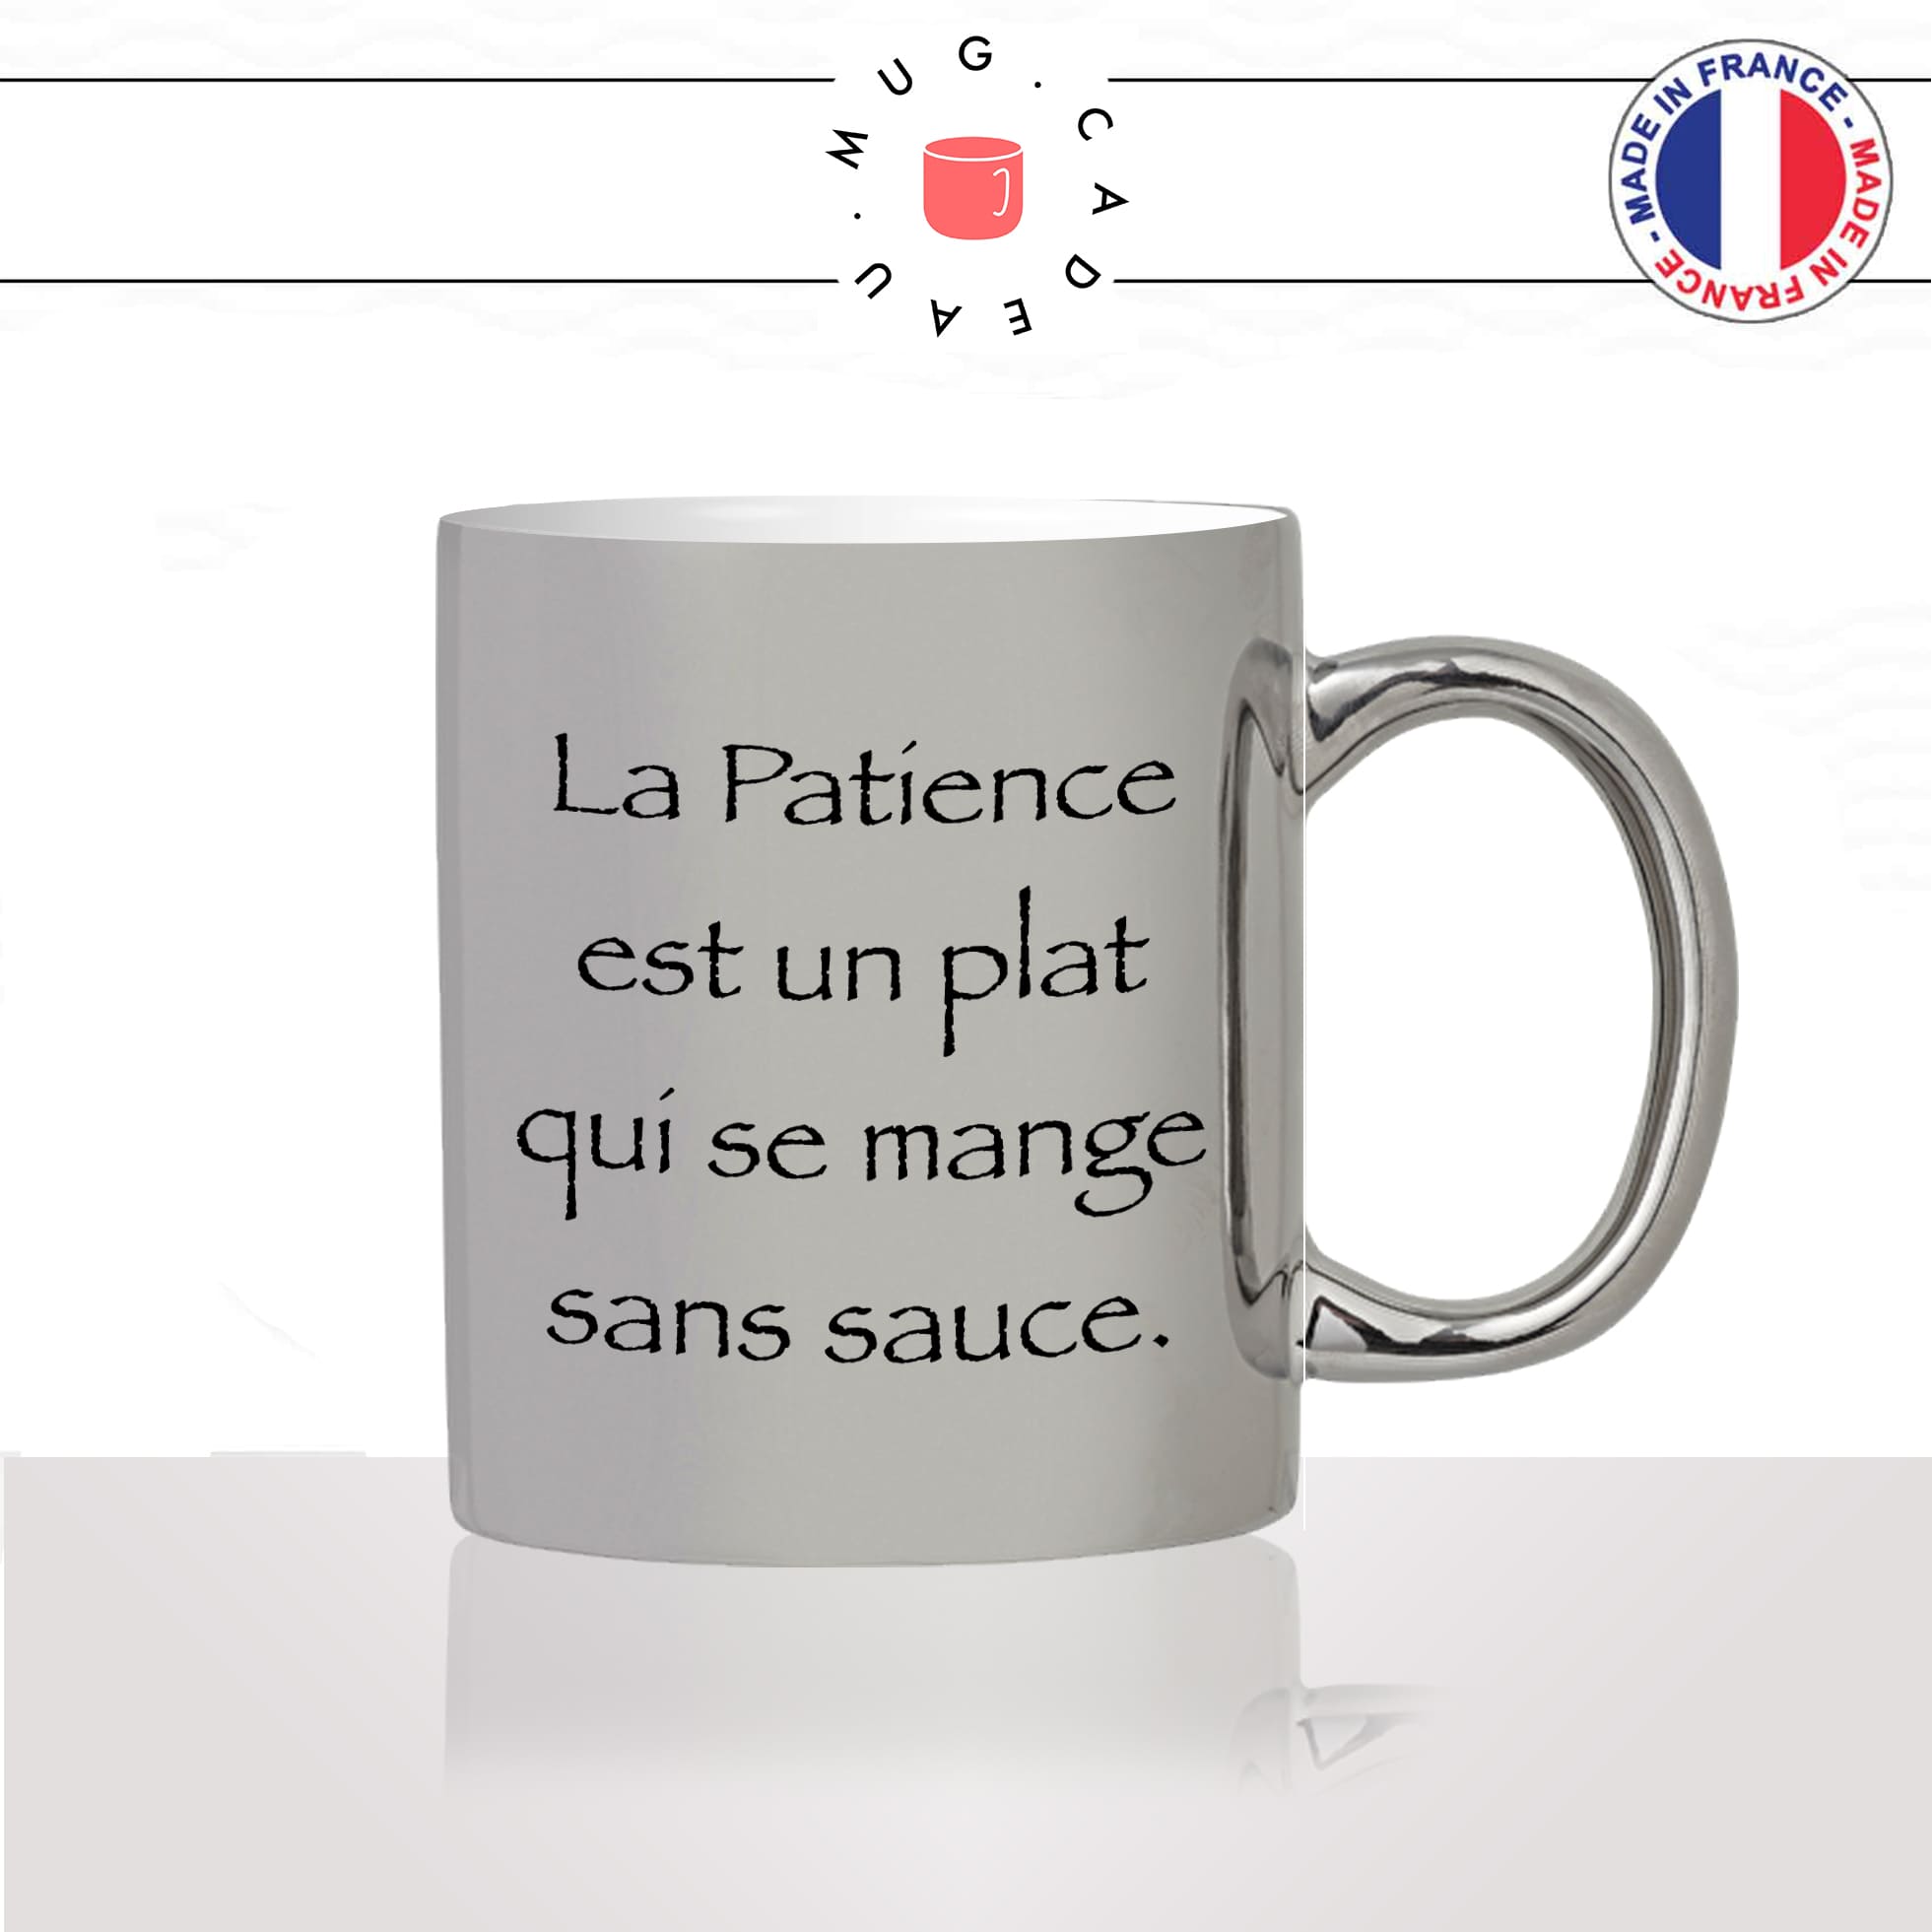 mug-tasse-argent-argenté-silver-série-francaise-culte-kaamelott-arthur-la-patience-perceval-humour-télé-idée-cadeau-fun-cool-café-thé2